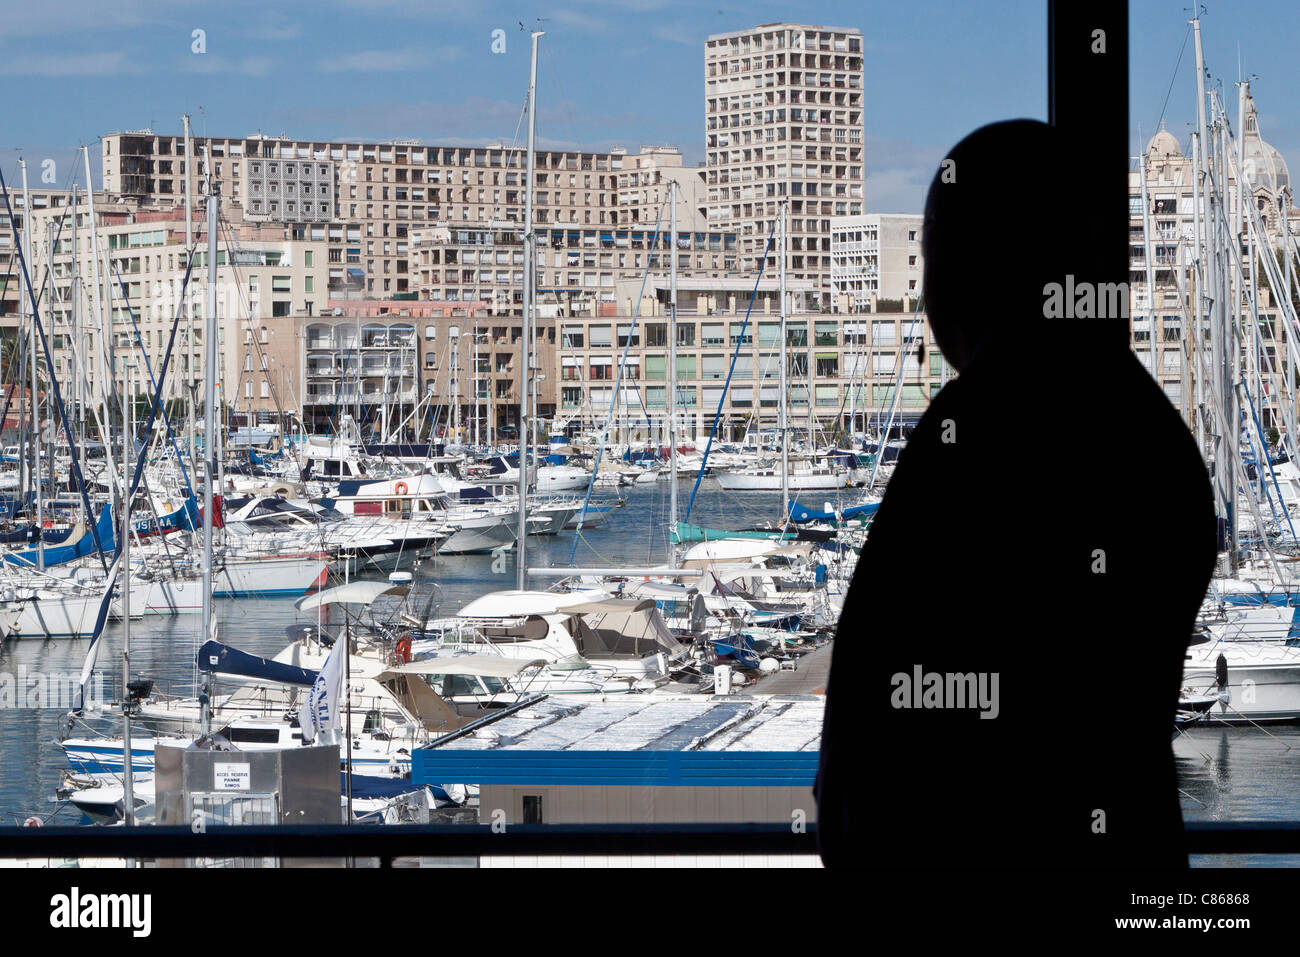 Silhouette der Person Blick auf Blick auf Hafen Stockfoto